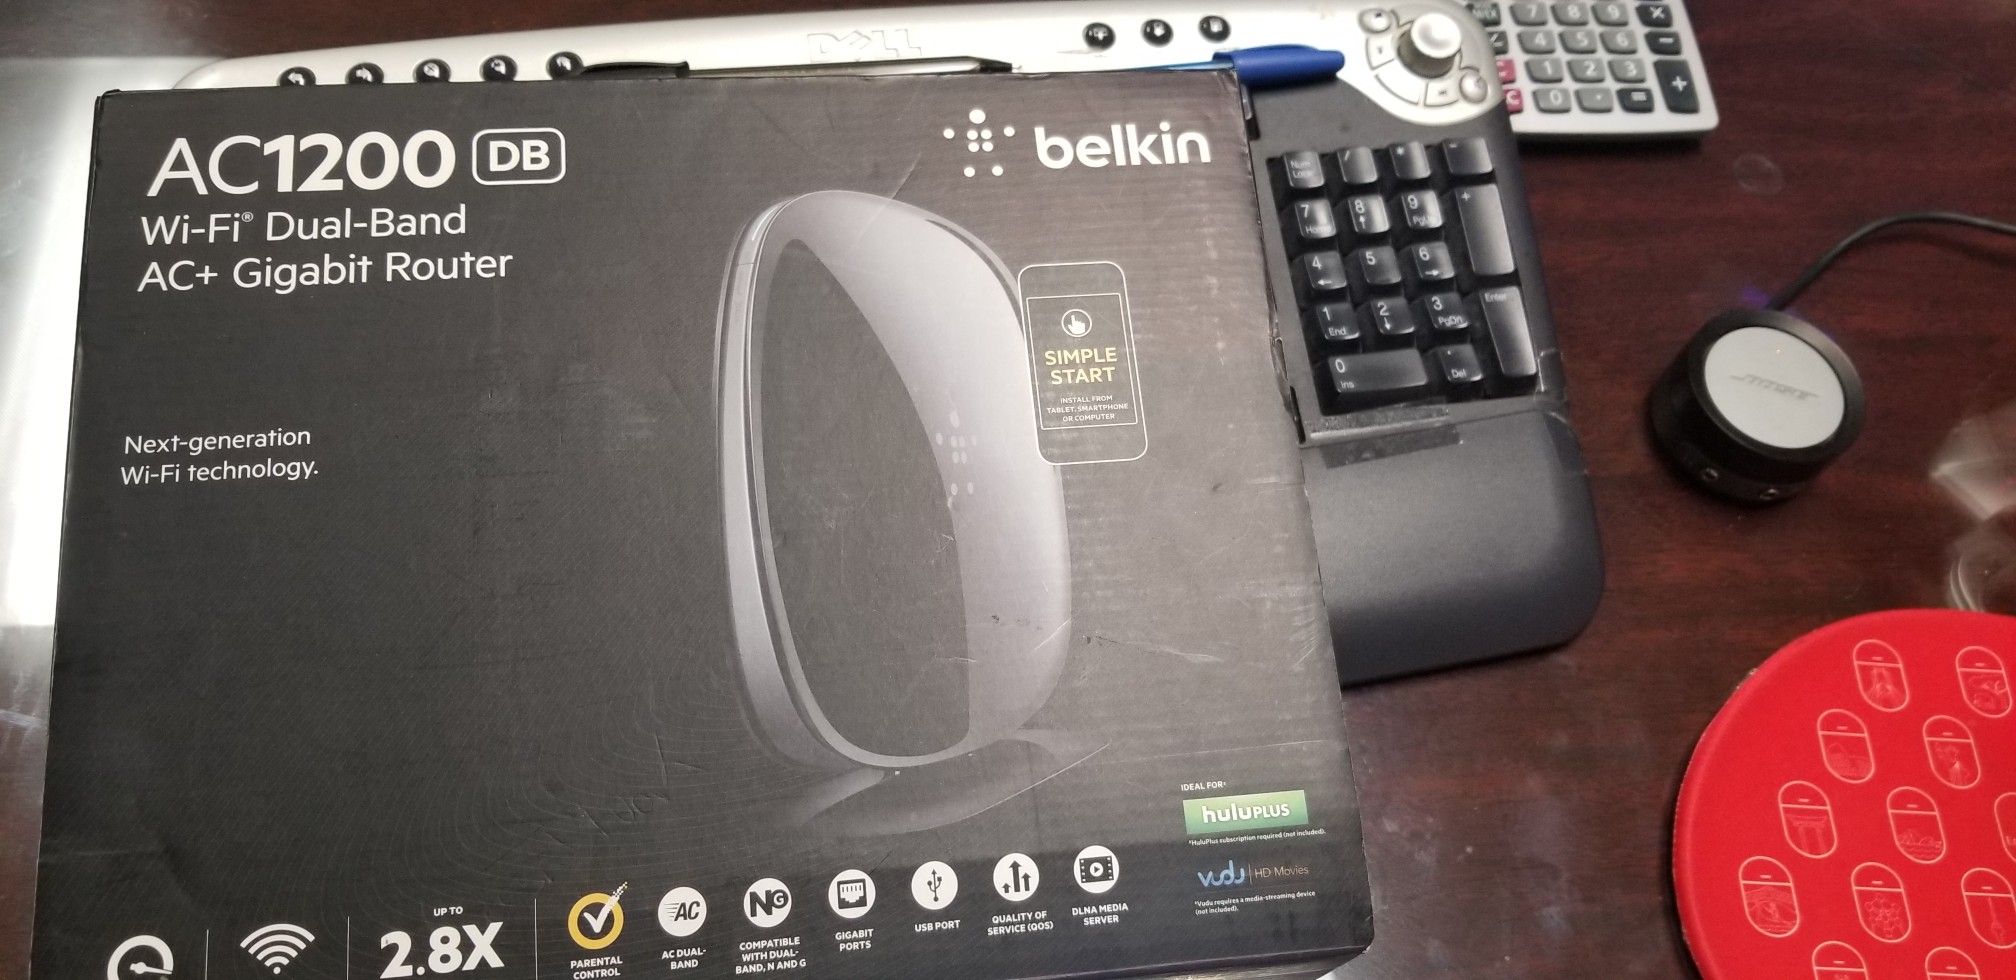 Belkin router AC1200